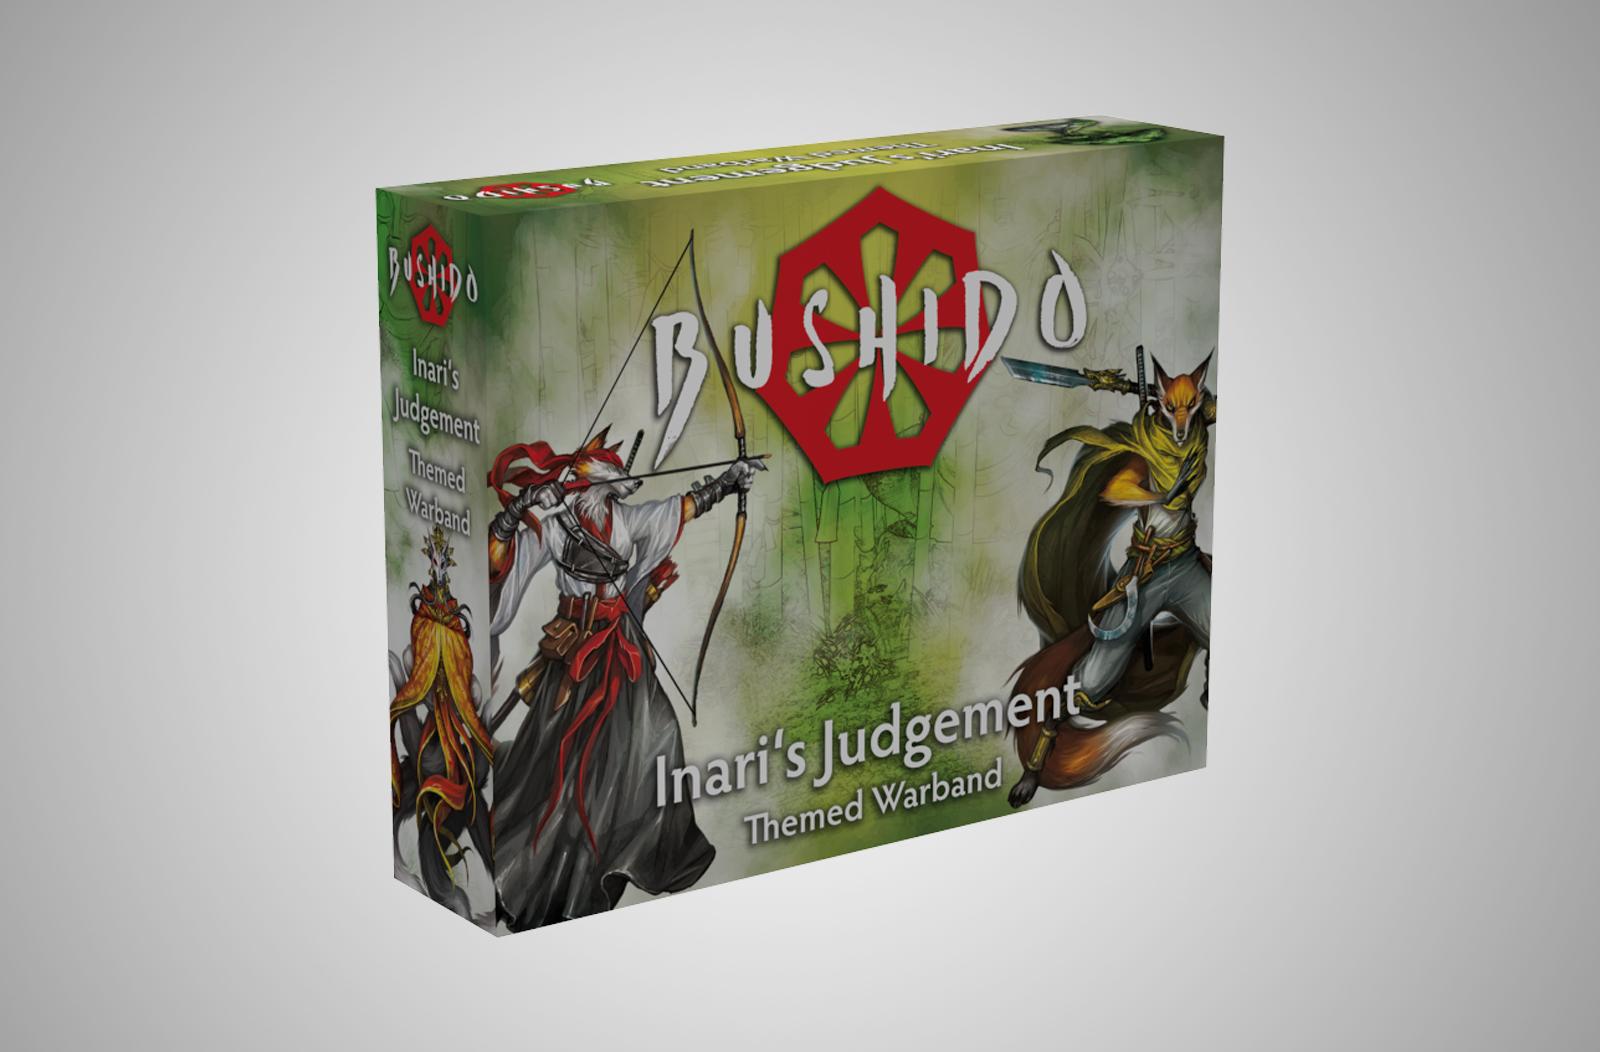 The Bushido Kitsune, Inari's Judgement starter set box.